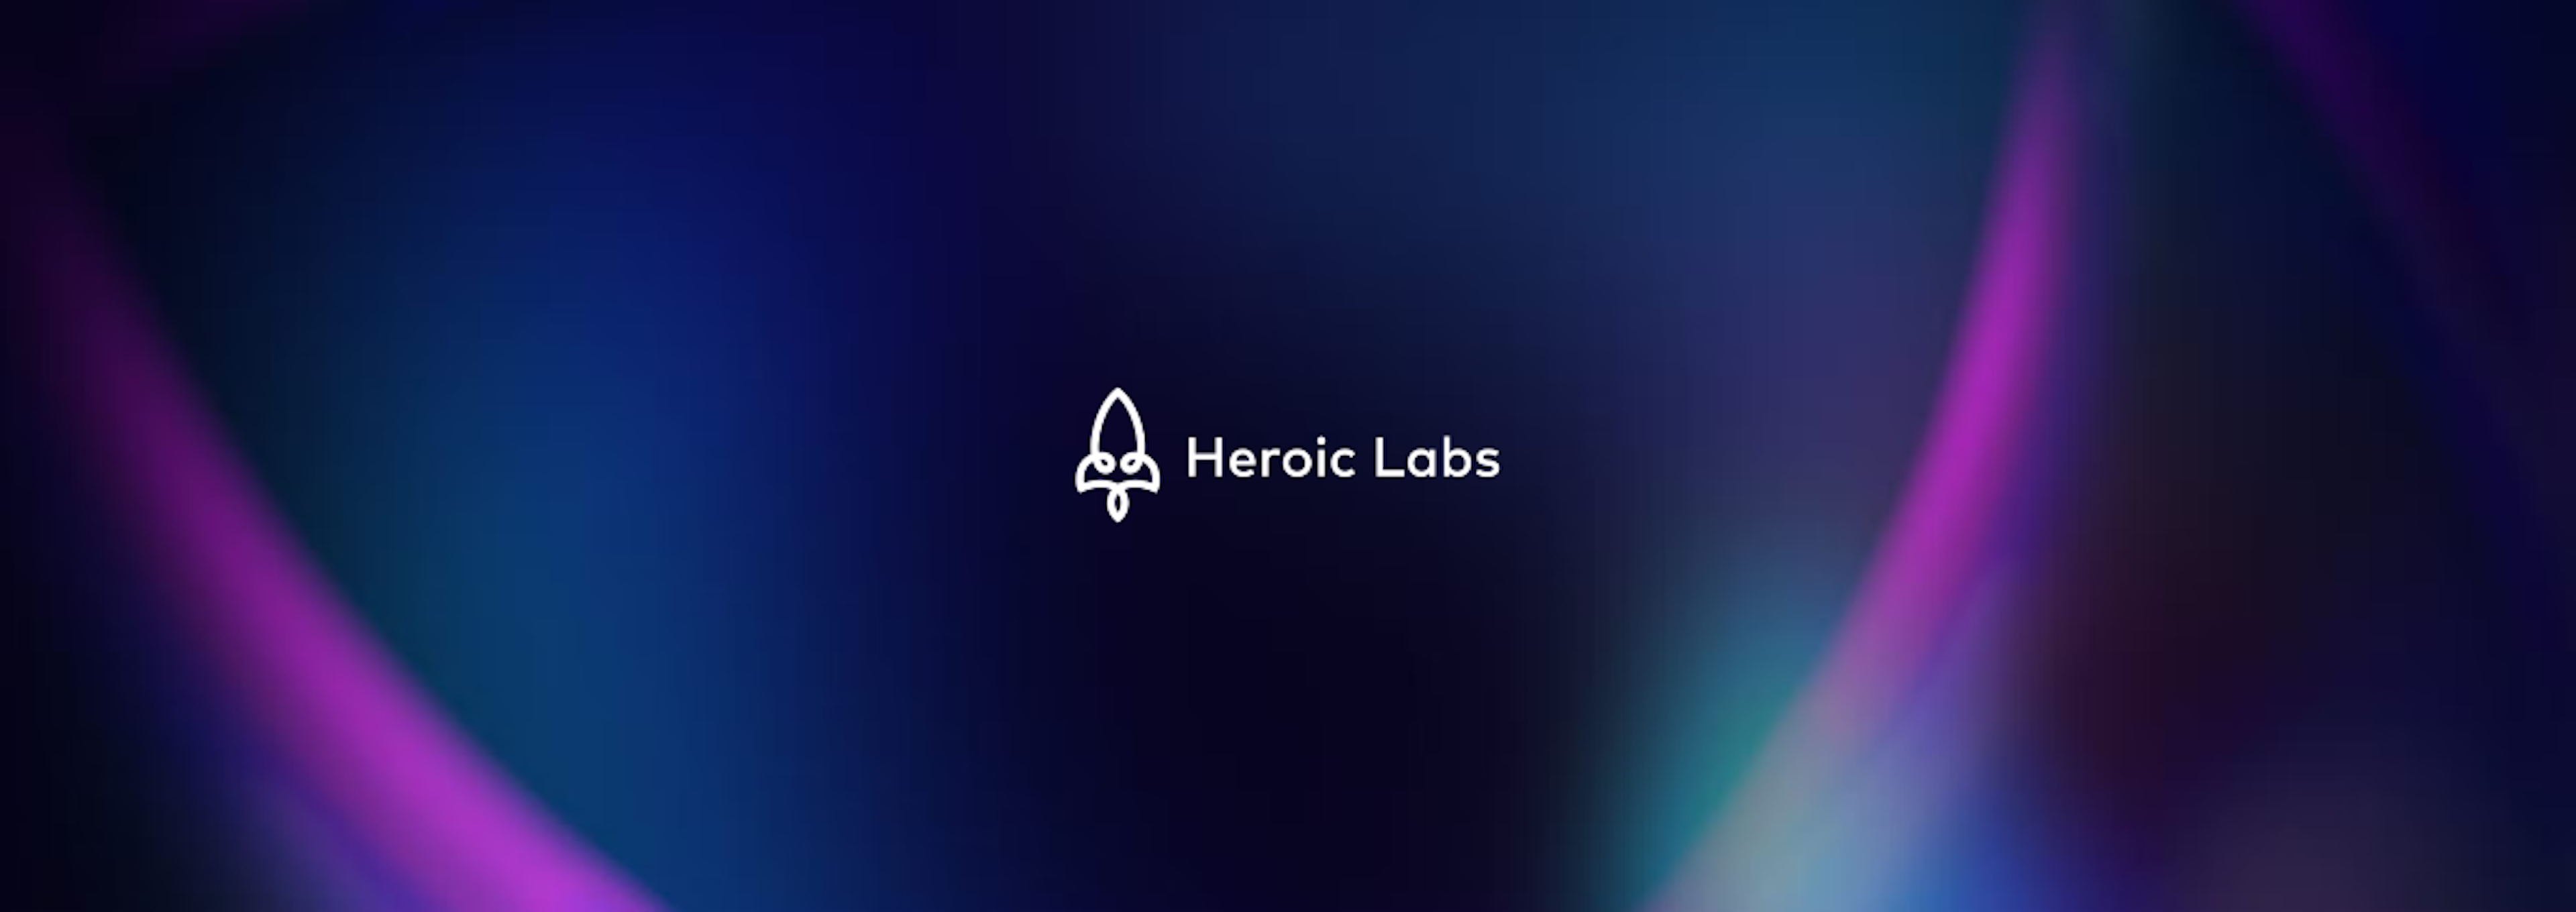 heroic-labs-thumbnail